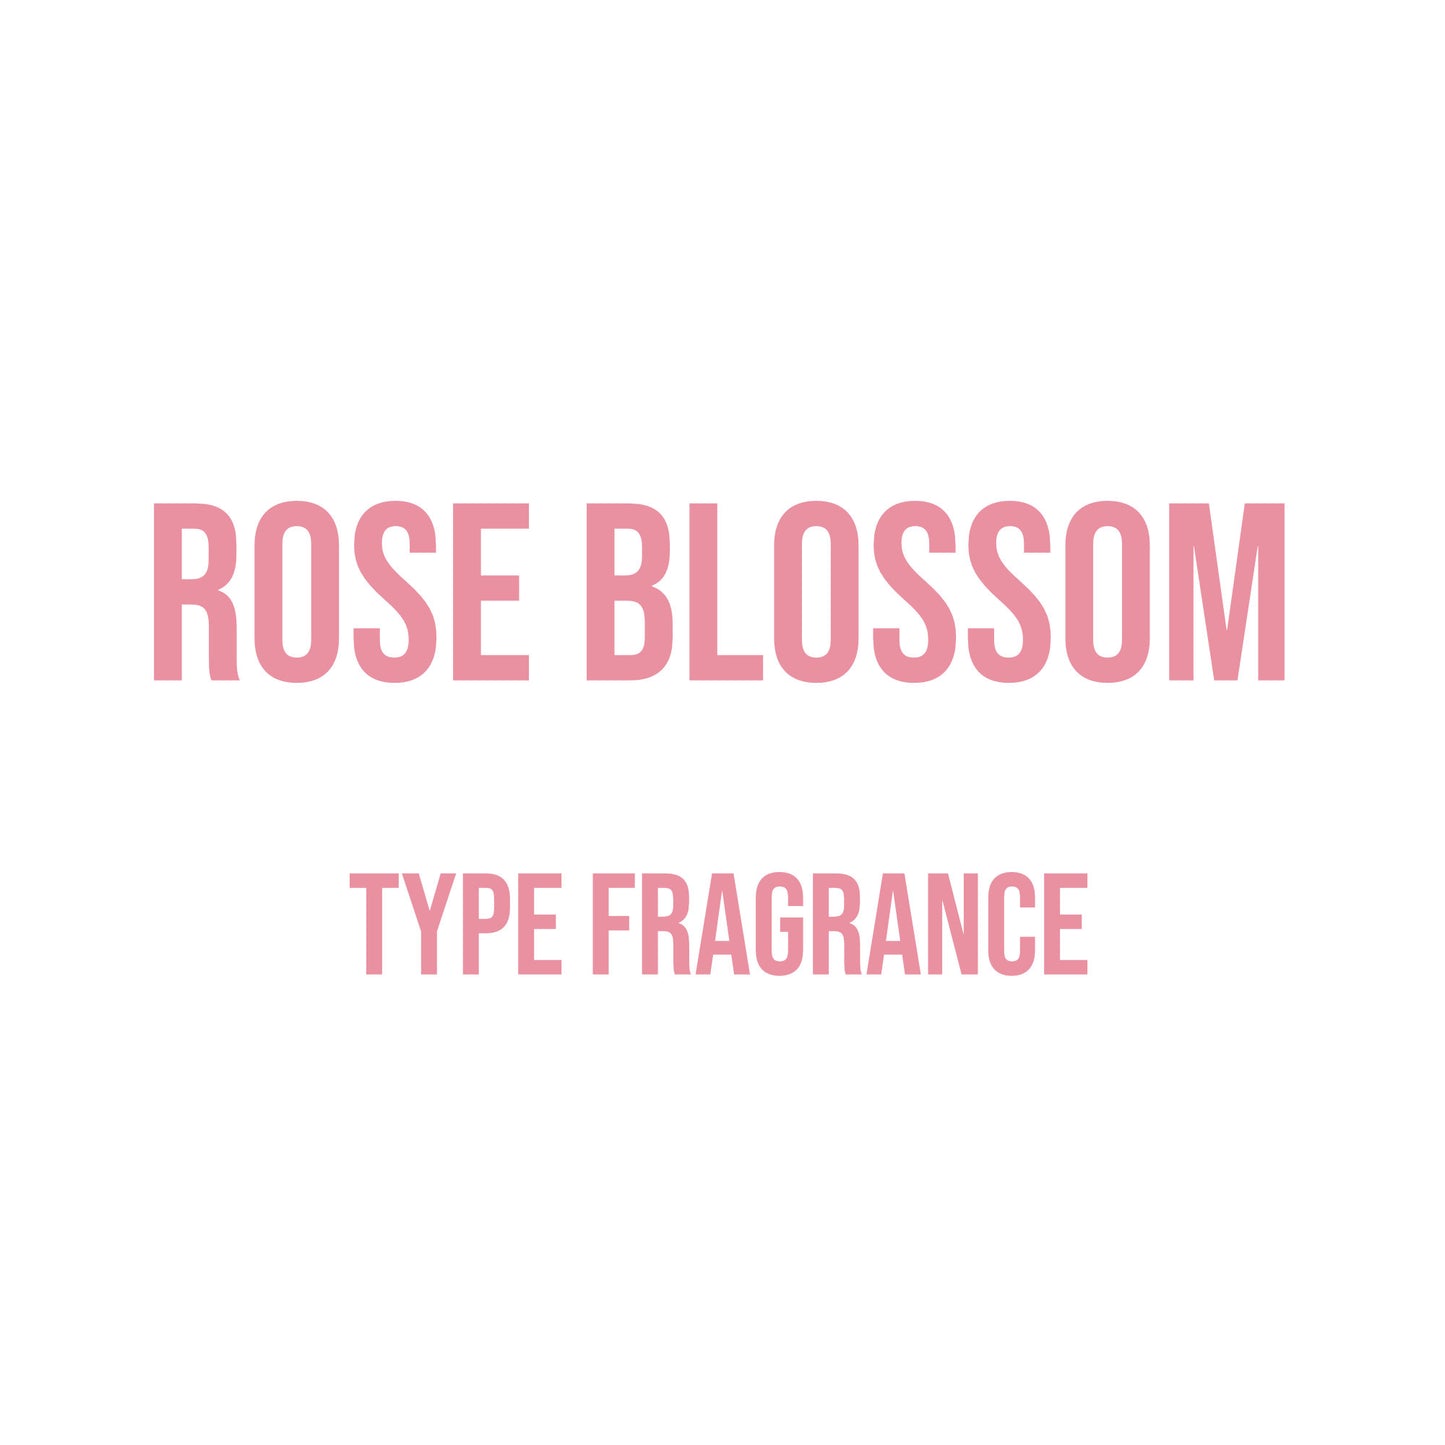 Rose Blossom Type Fragrance